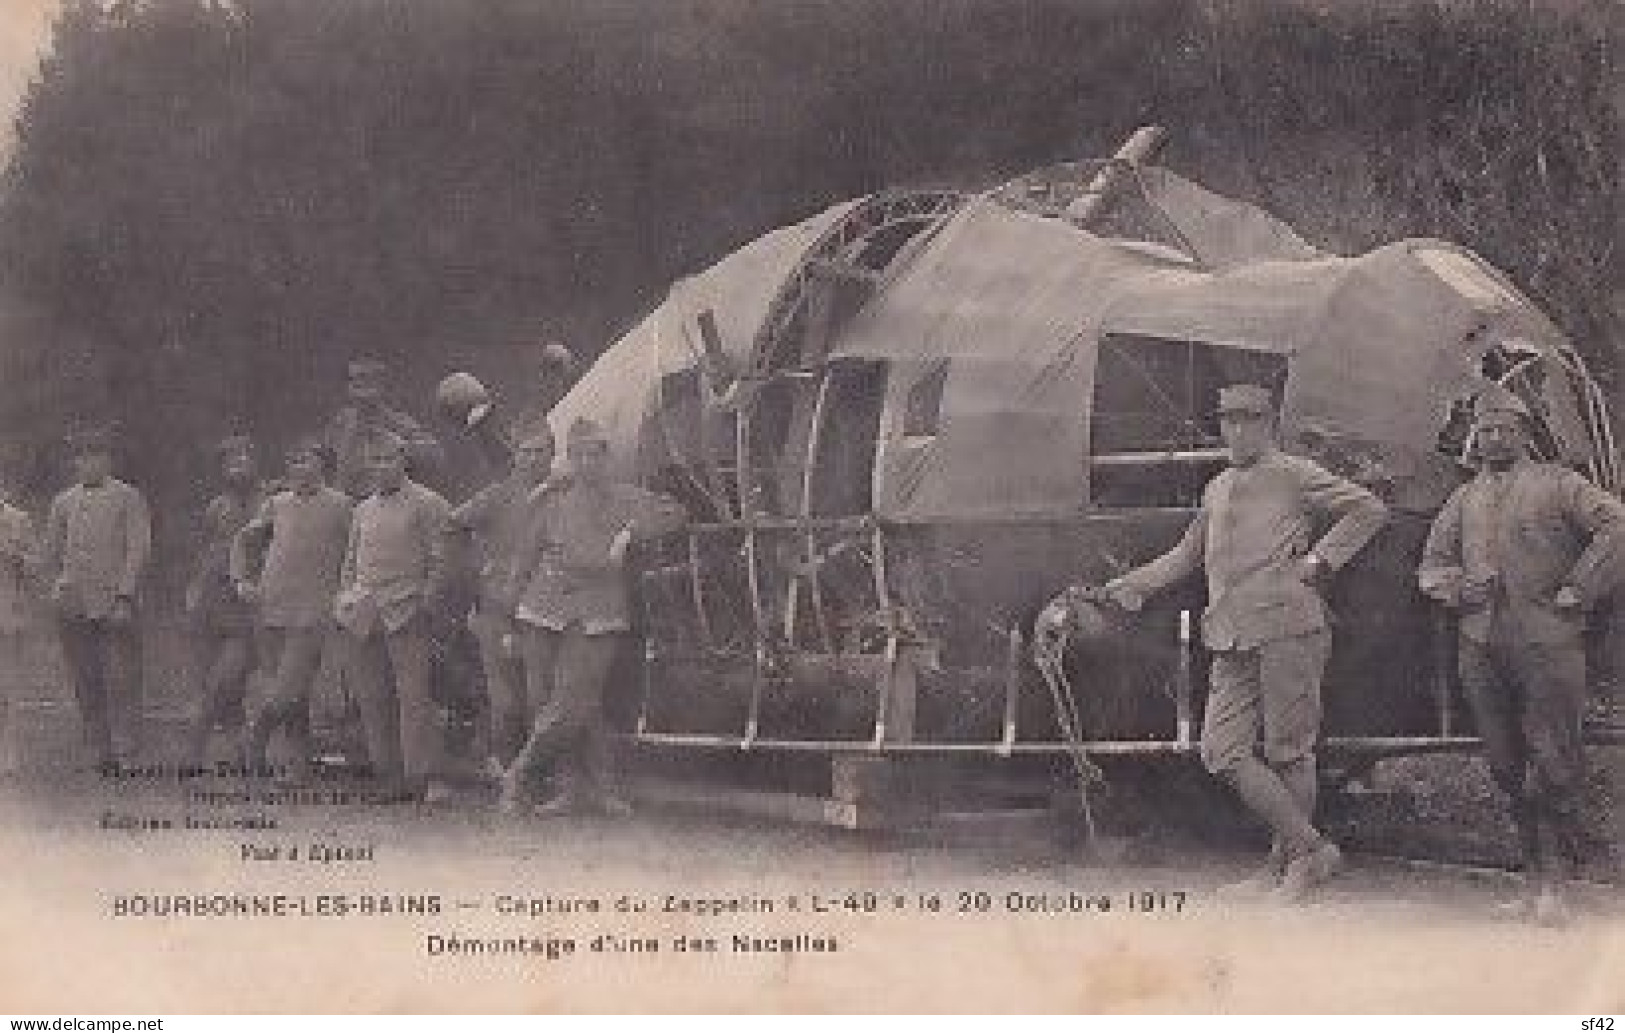 BOURBONNE LES BAINS         CAPTURE DU ZEPPELIN  L 49  LE 20 10 1917    DEMONTAGE D UNE NACELLE - Weltkrieg 1914-18